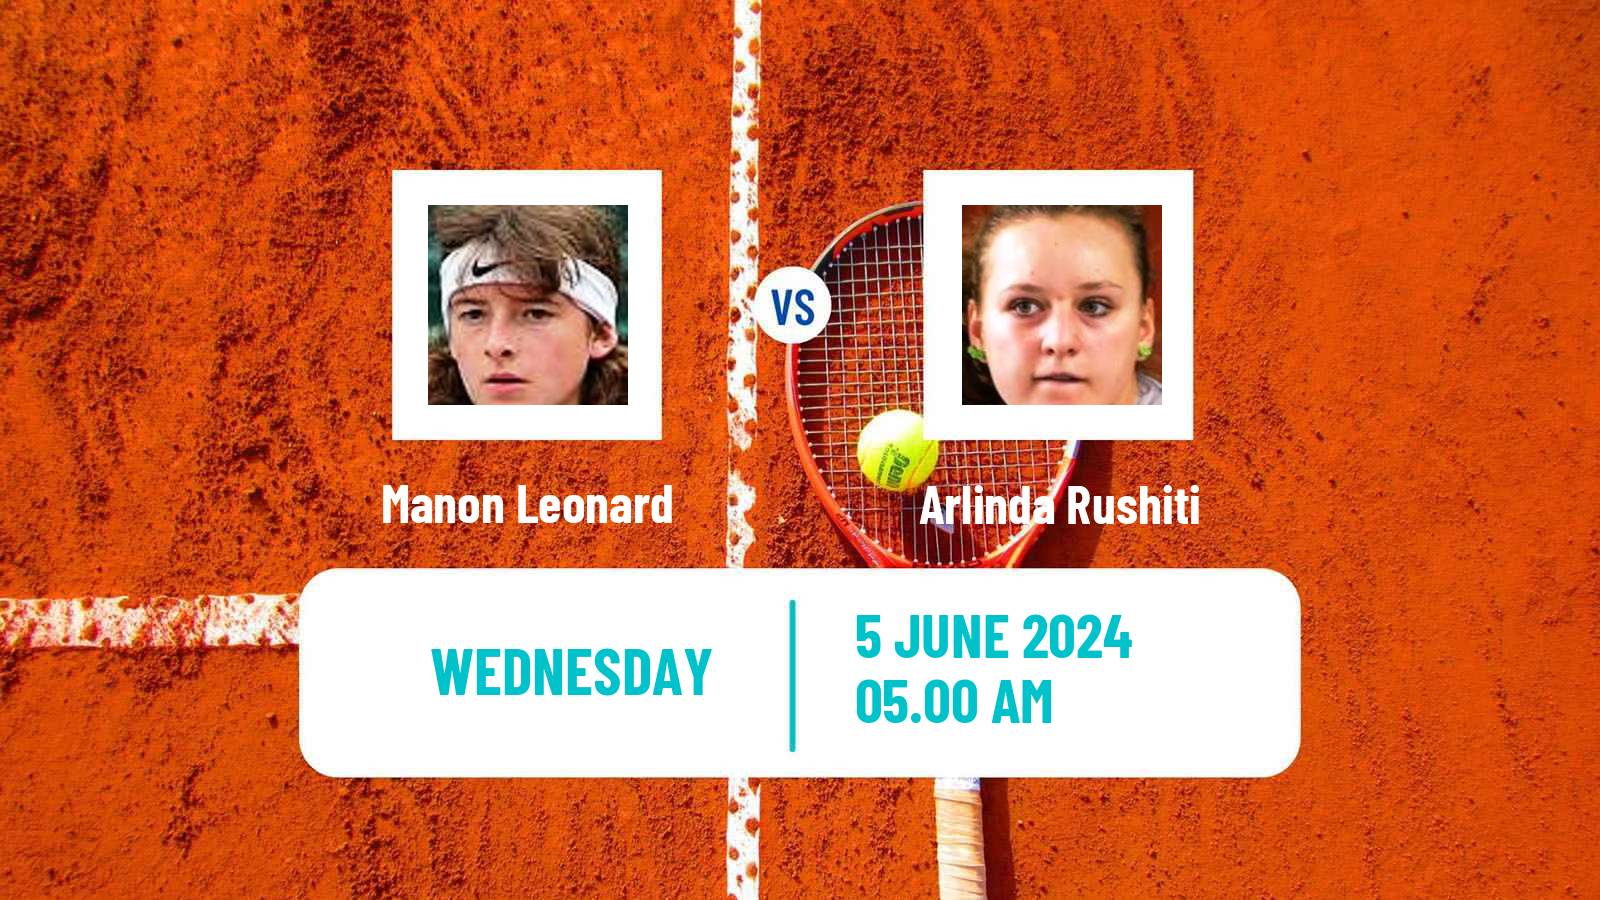 Tennis ITF W50 La Marsa Women Manon Leonard - Arlinda Rushiti